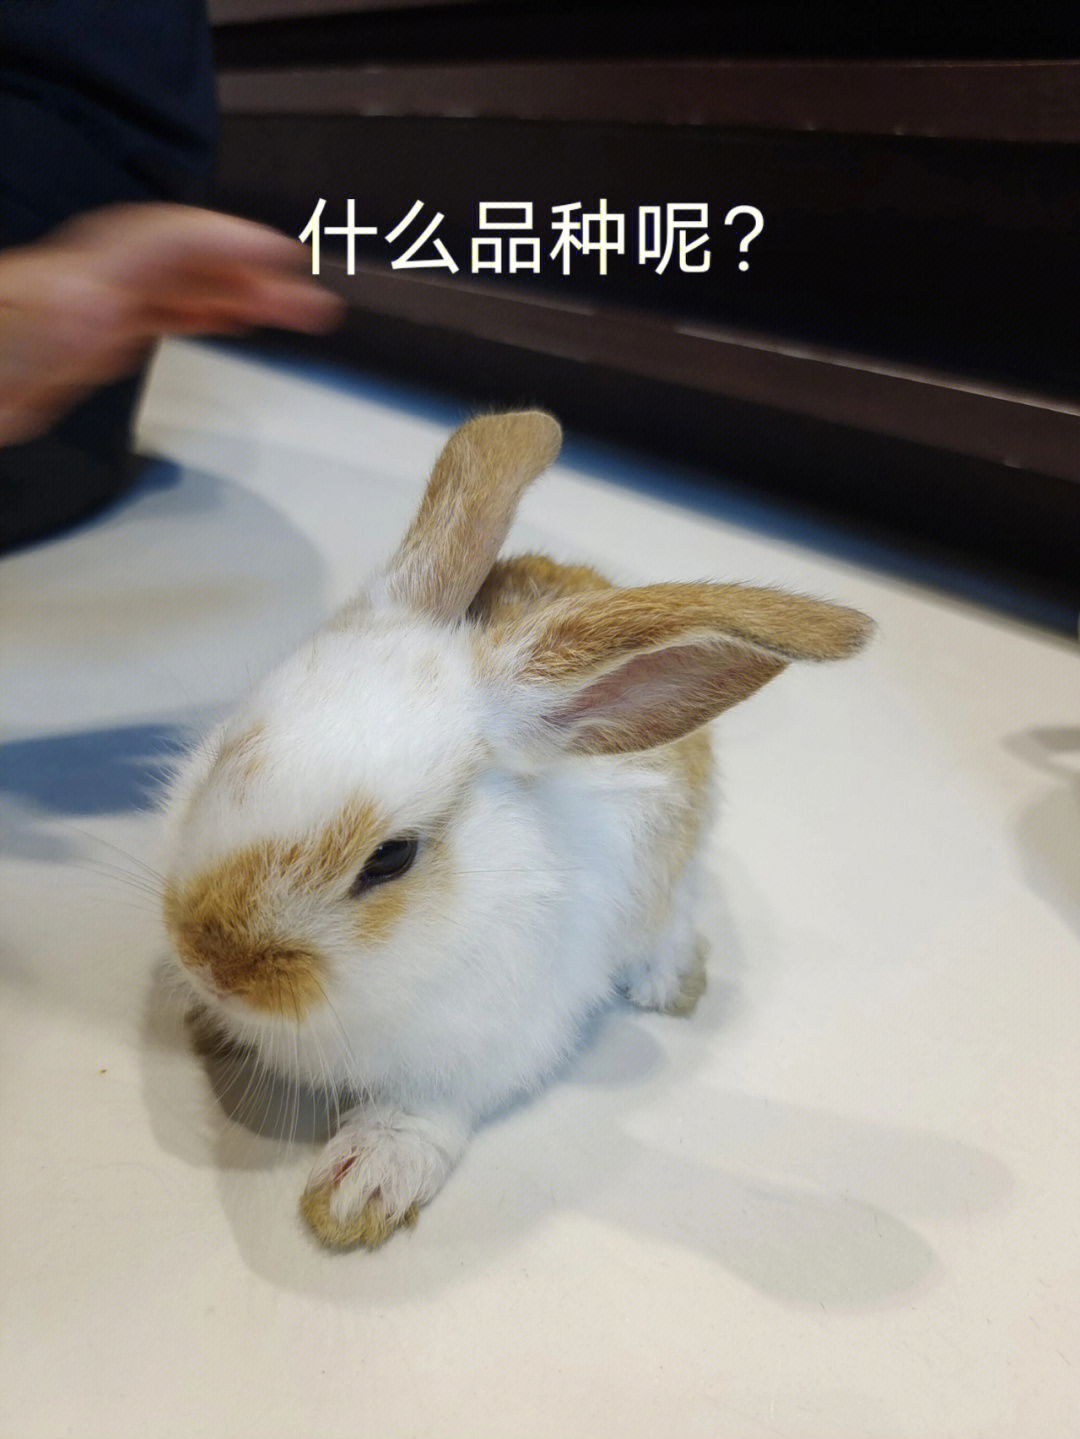 有小伙伴认识这是什么品种兔子么?